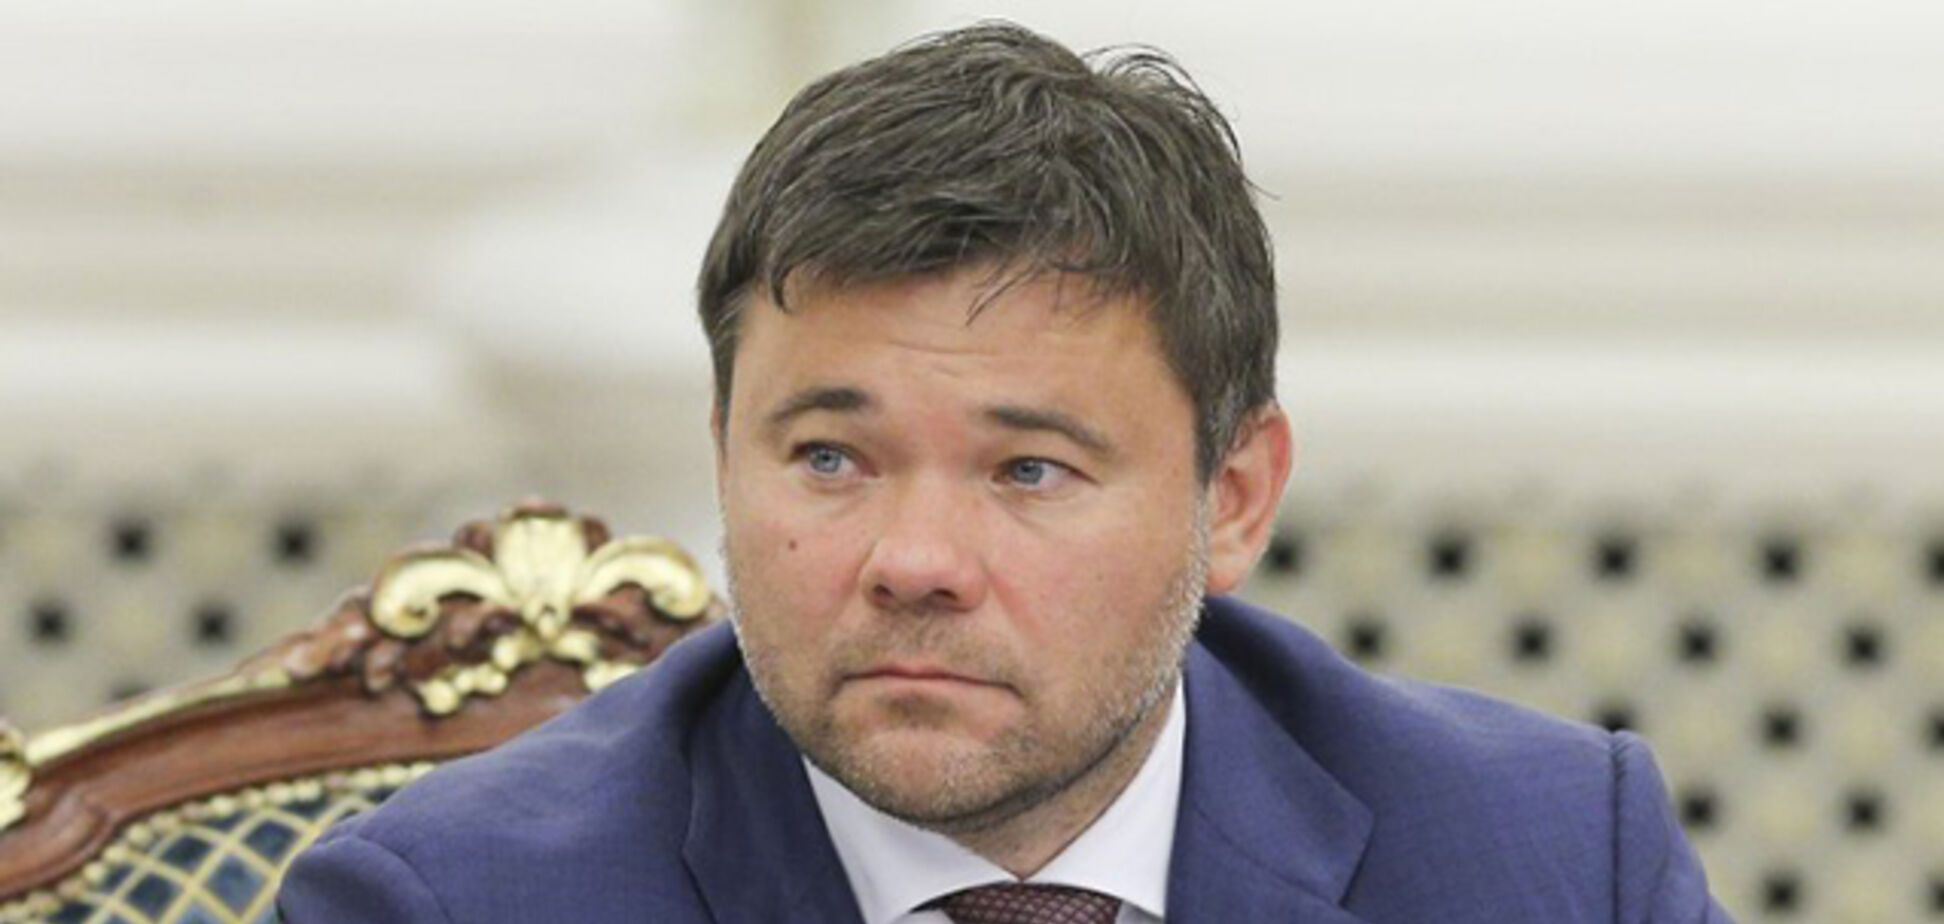 Богдан програв суд партії Порошенка